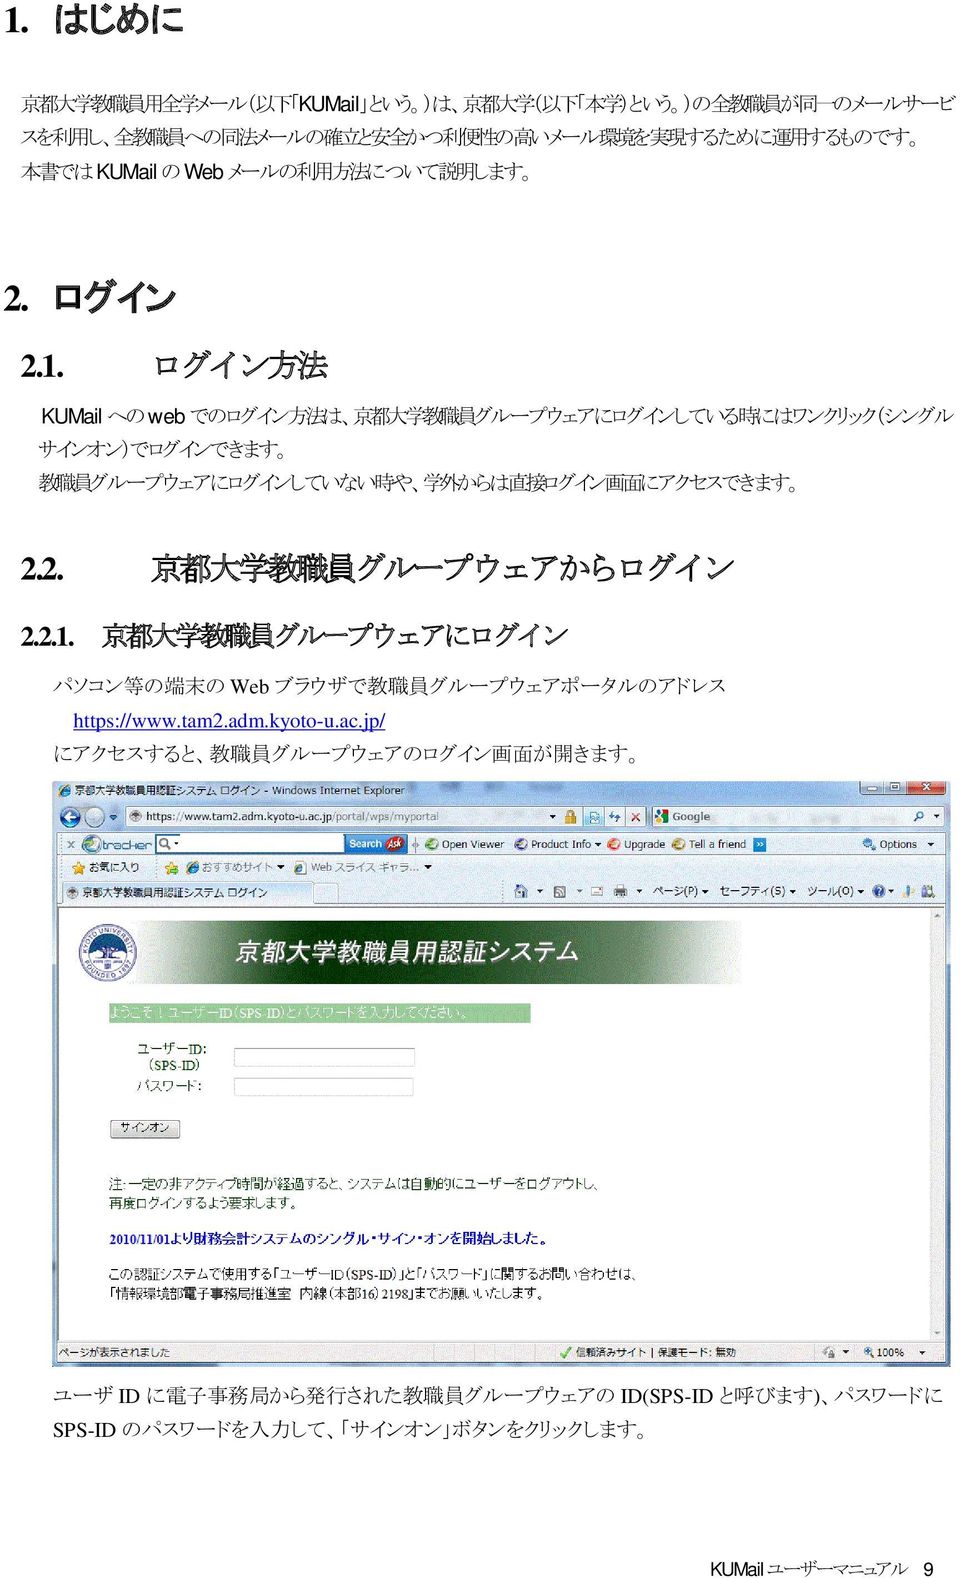 ログイン 方 法 KUMail への web でのログイン 方 法 は 京 都 大 学 教 職 員 グループウェアにログインしている 時 にはワンクリック(シングル サインオン)でログインできます 教 職 員 グループウェアにログインしていない 時 や 学 外 からは 直 接 ログイン 画 面 にアクセスできます 2.